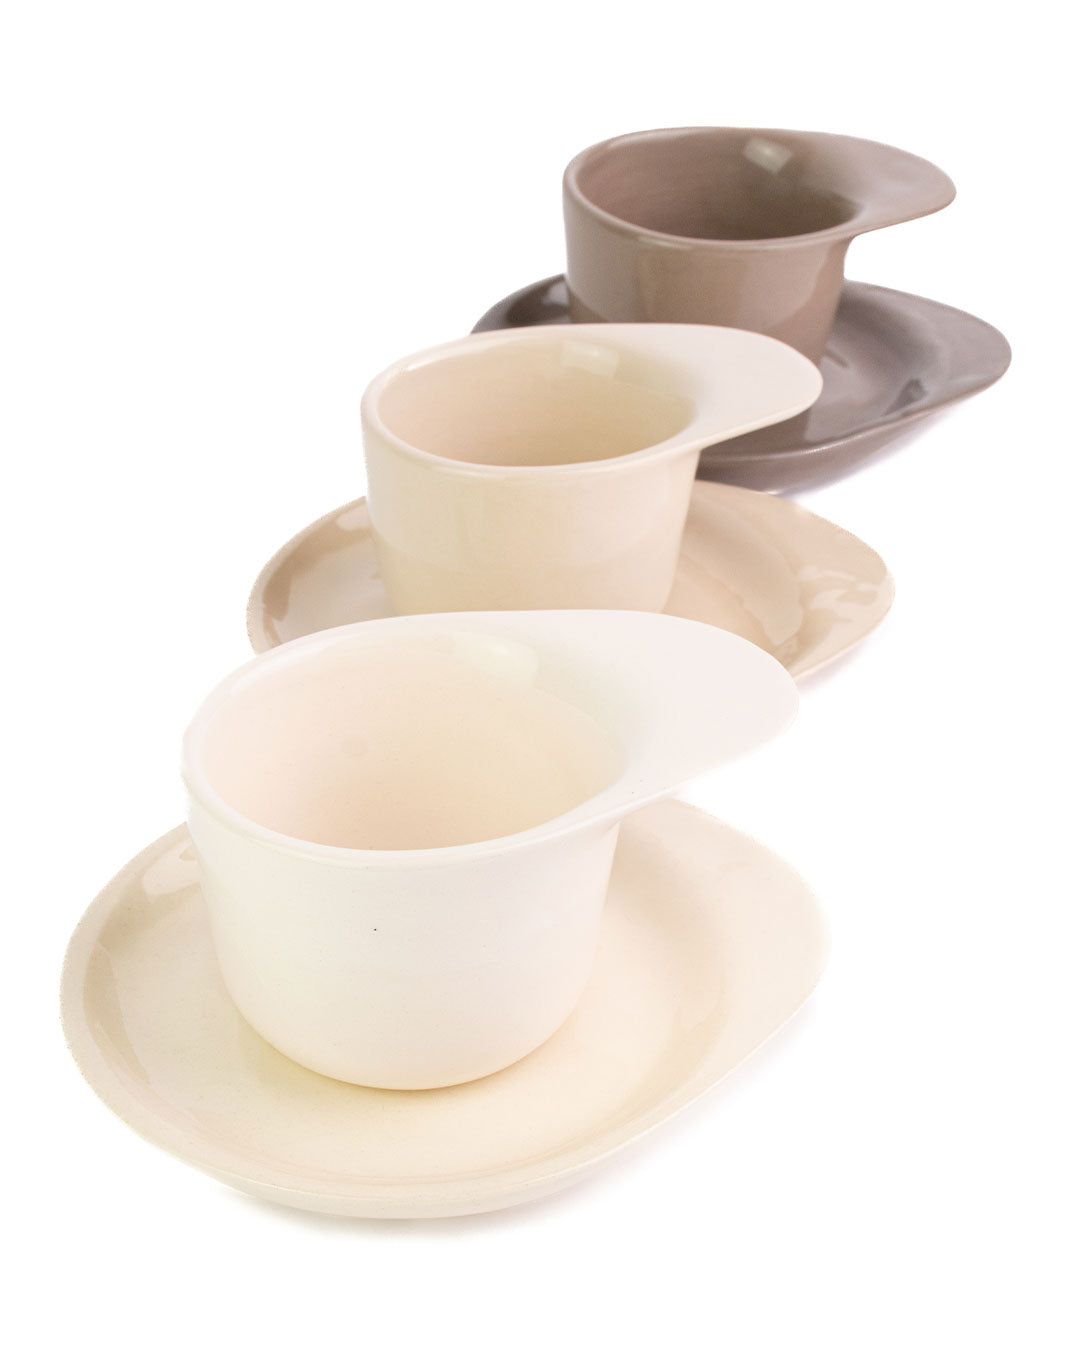 Ameno Tea Cups with Plate_pottery_nu ceramica